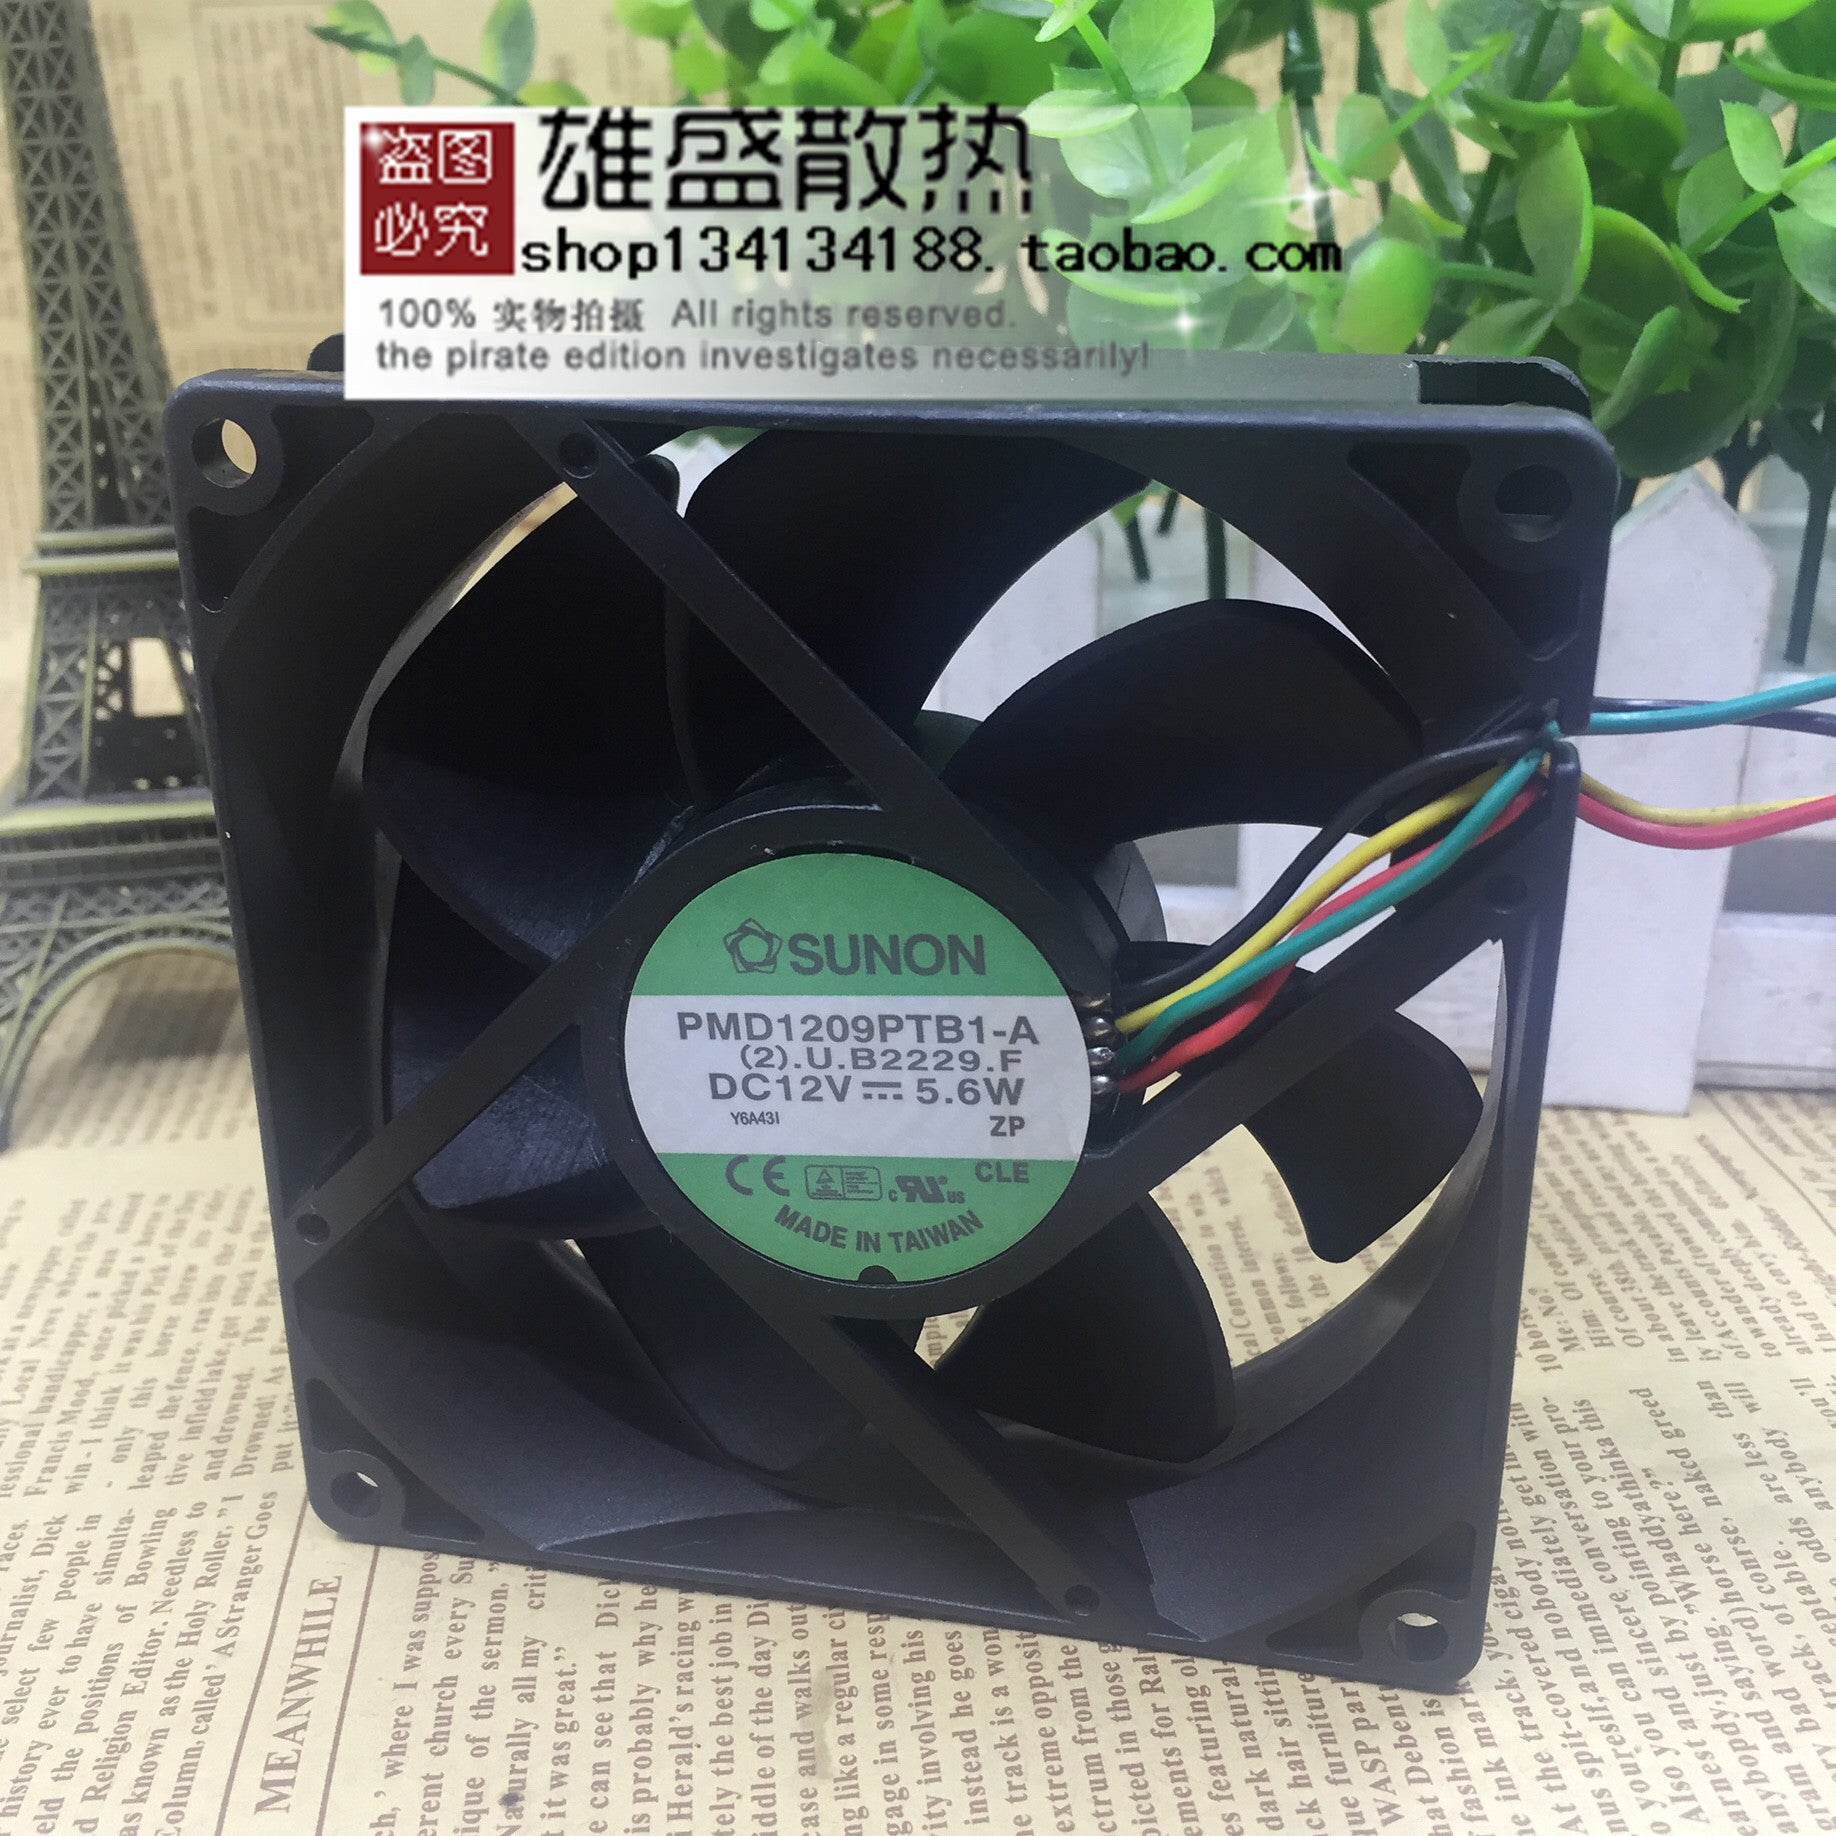 Sunon 9025 PMD1209PTB1-A Dc12v 9cm 4-Pin PWM Temperature Control Case Fan